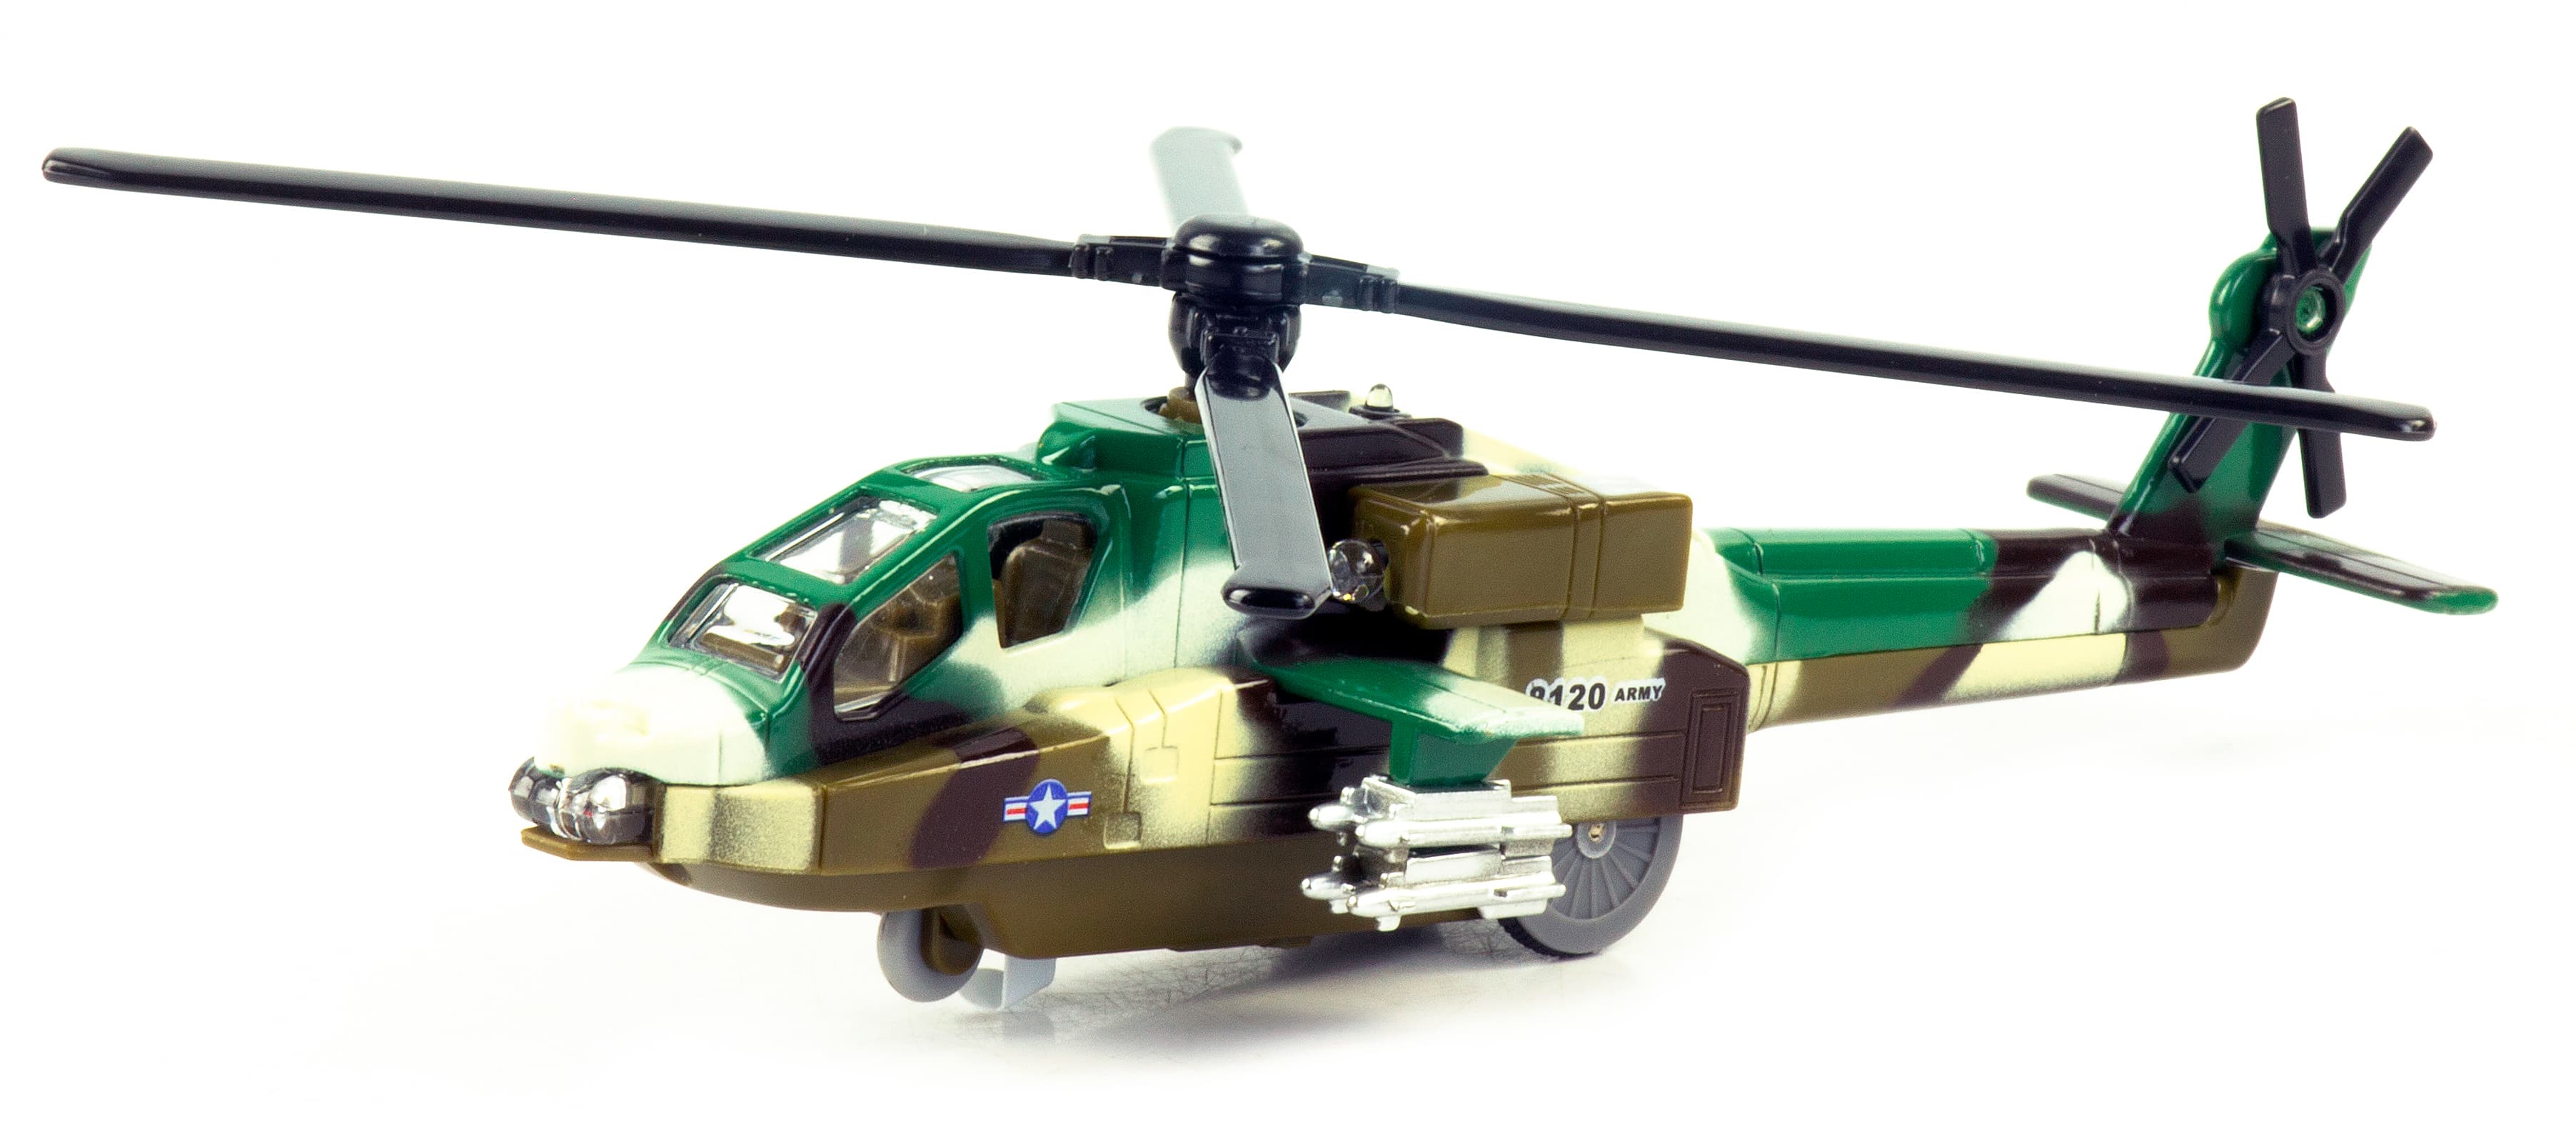 Металлический военный вертолет «Sonic Gunship» 22 см. 8120D-3, инерционный, свет, звук